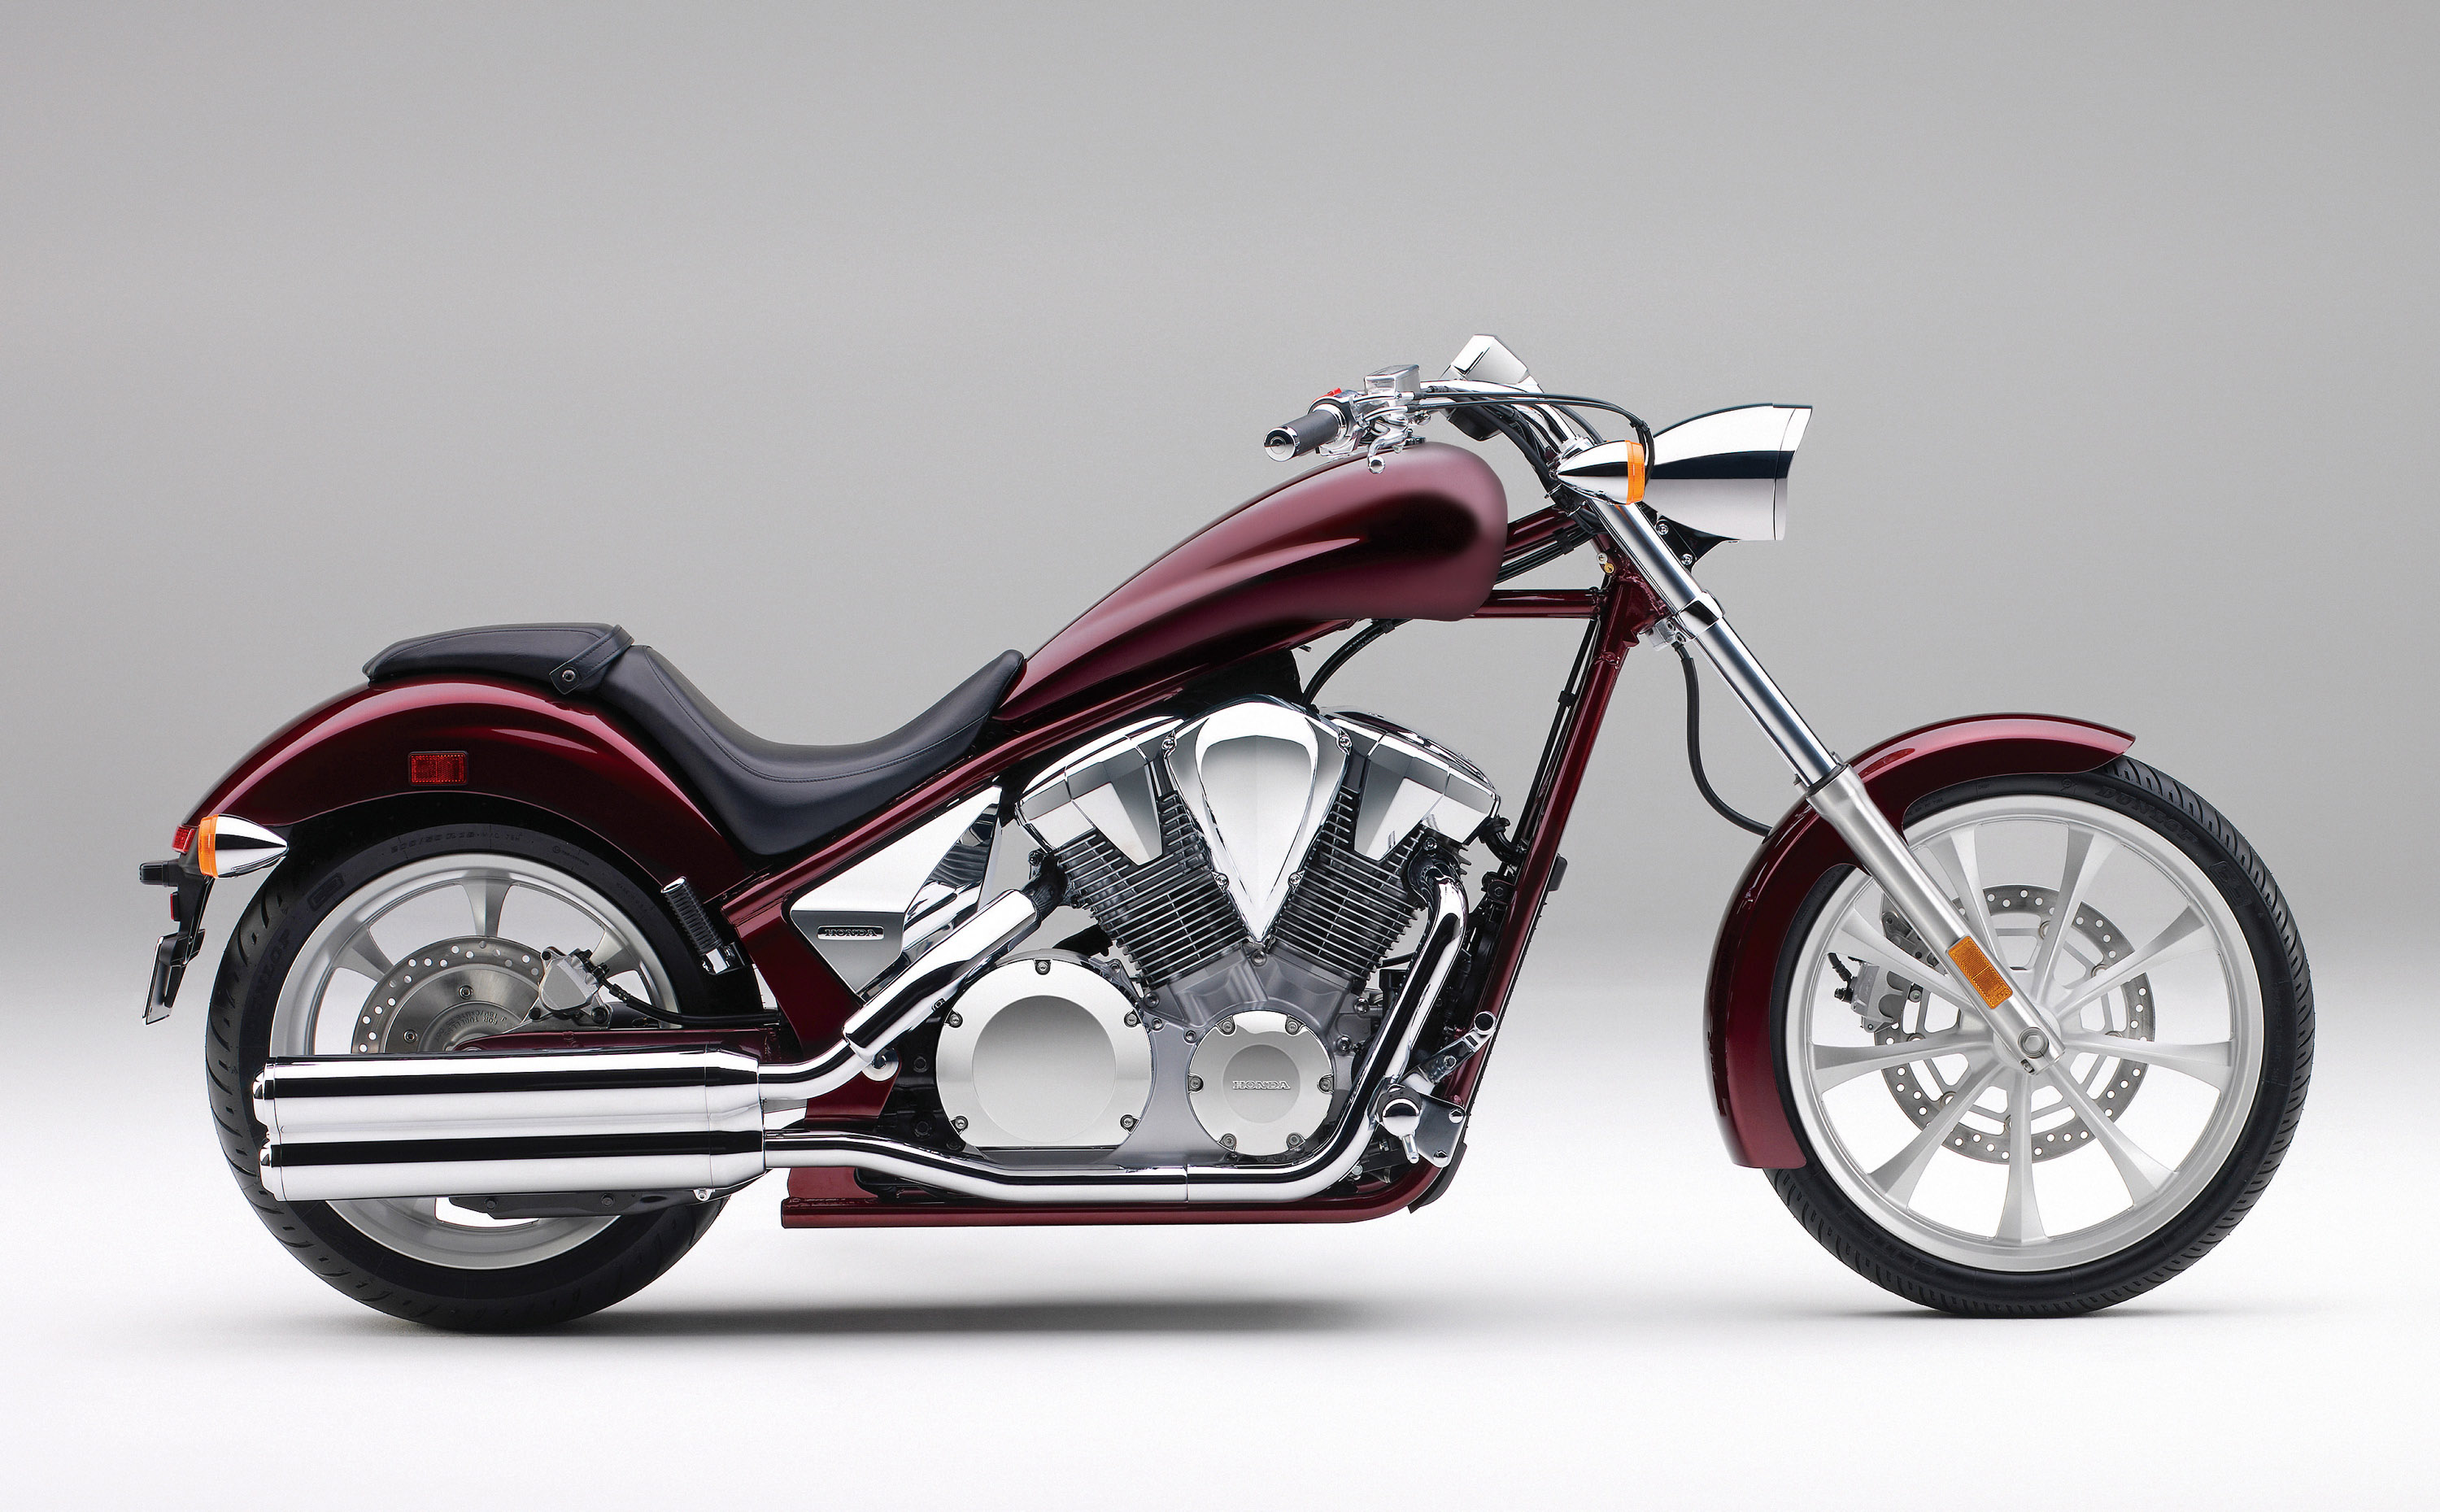 Мотоцикл honda vt 1300cr stateline 2012 цена, фото, характеристики, обзор, сравнение на базамото